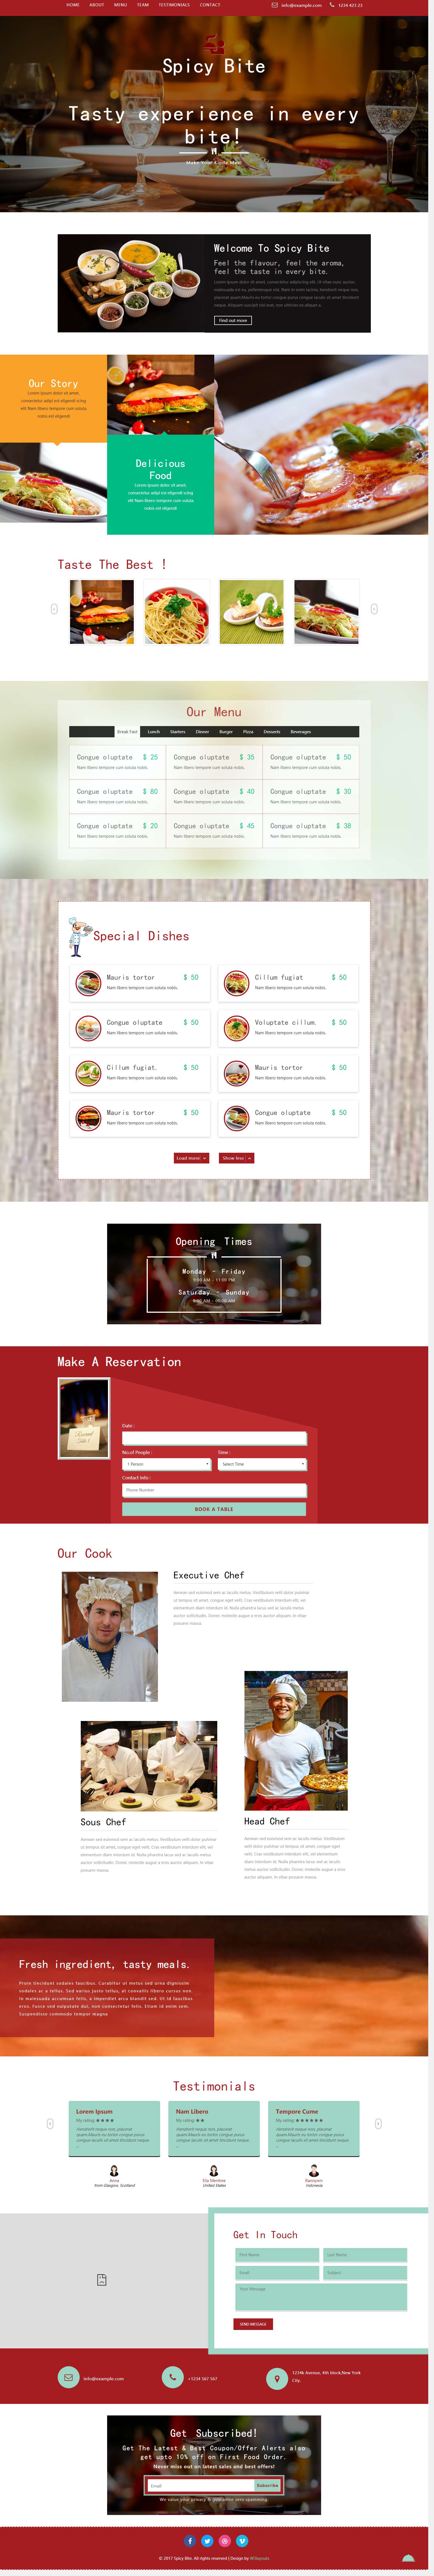 红色宽屏风格的辣口餐厅展示源码下载